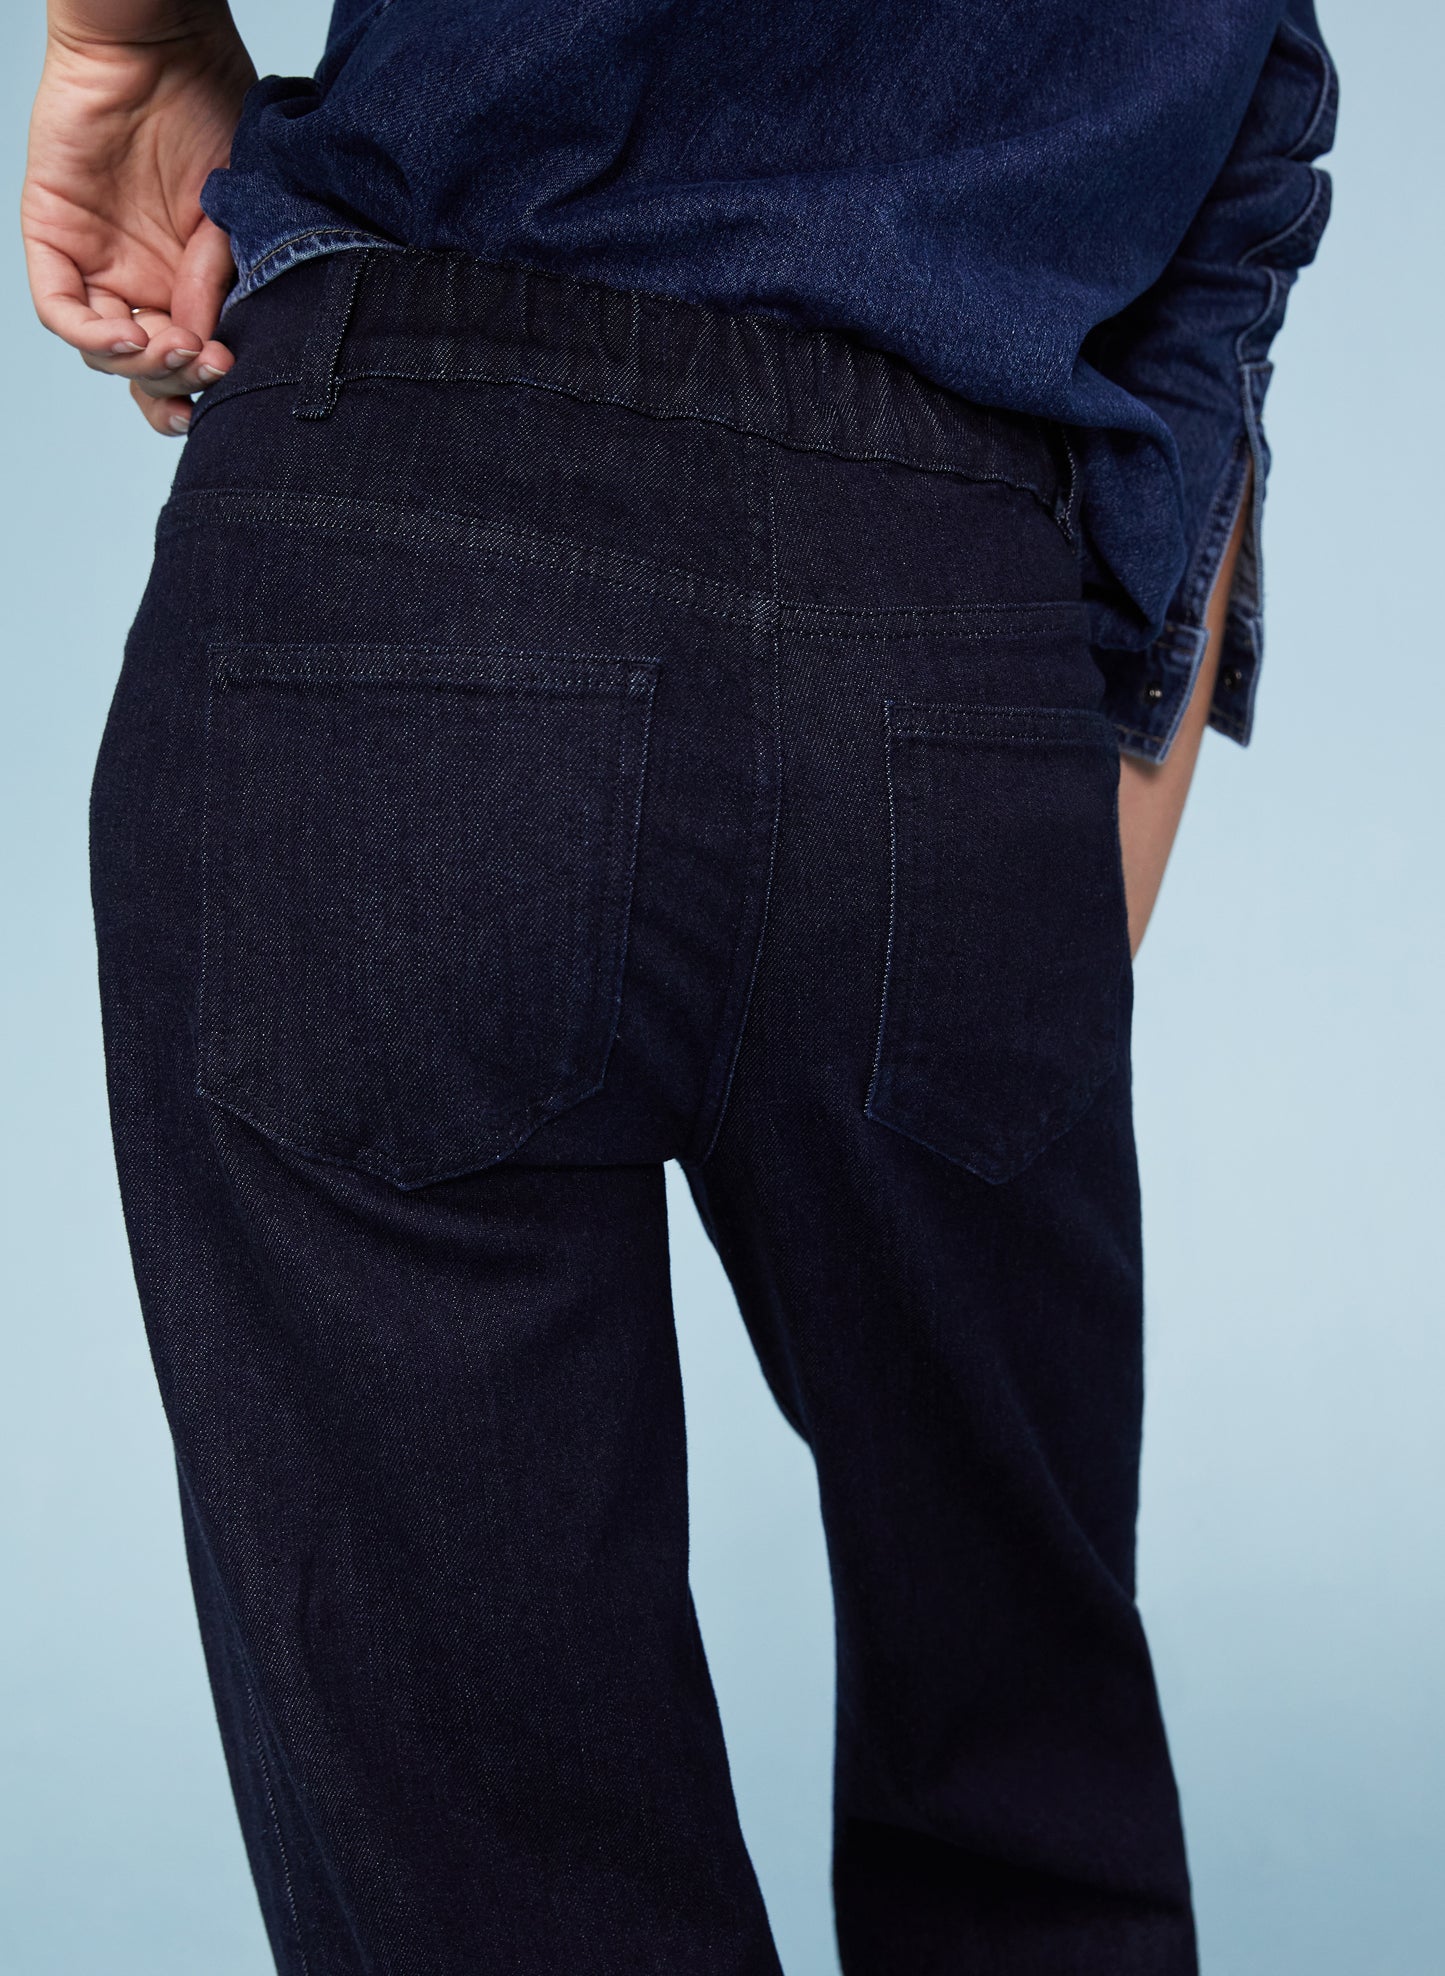 Baukjen Organic Pintuck Wide Jeans